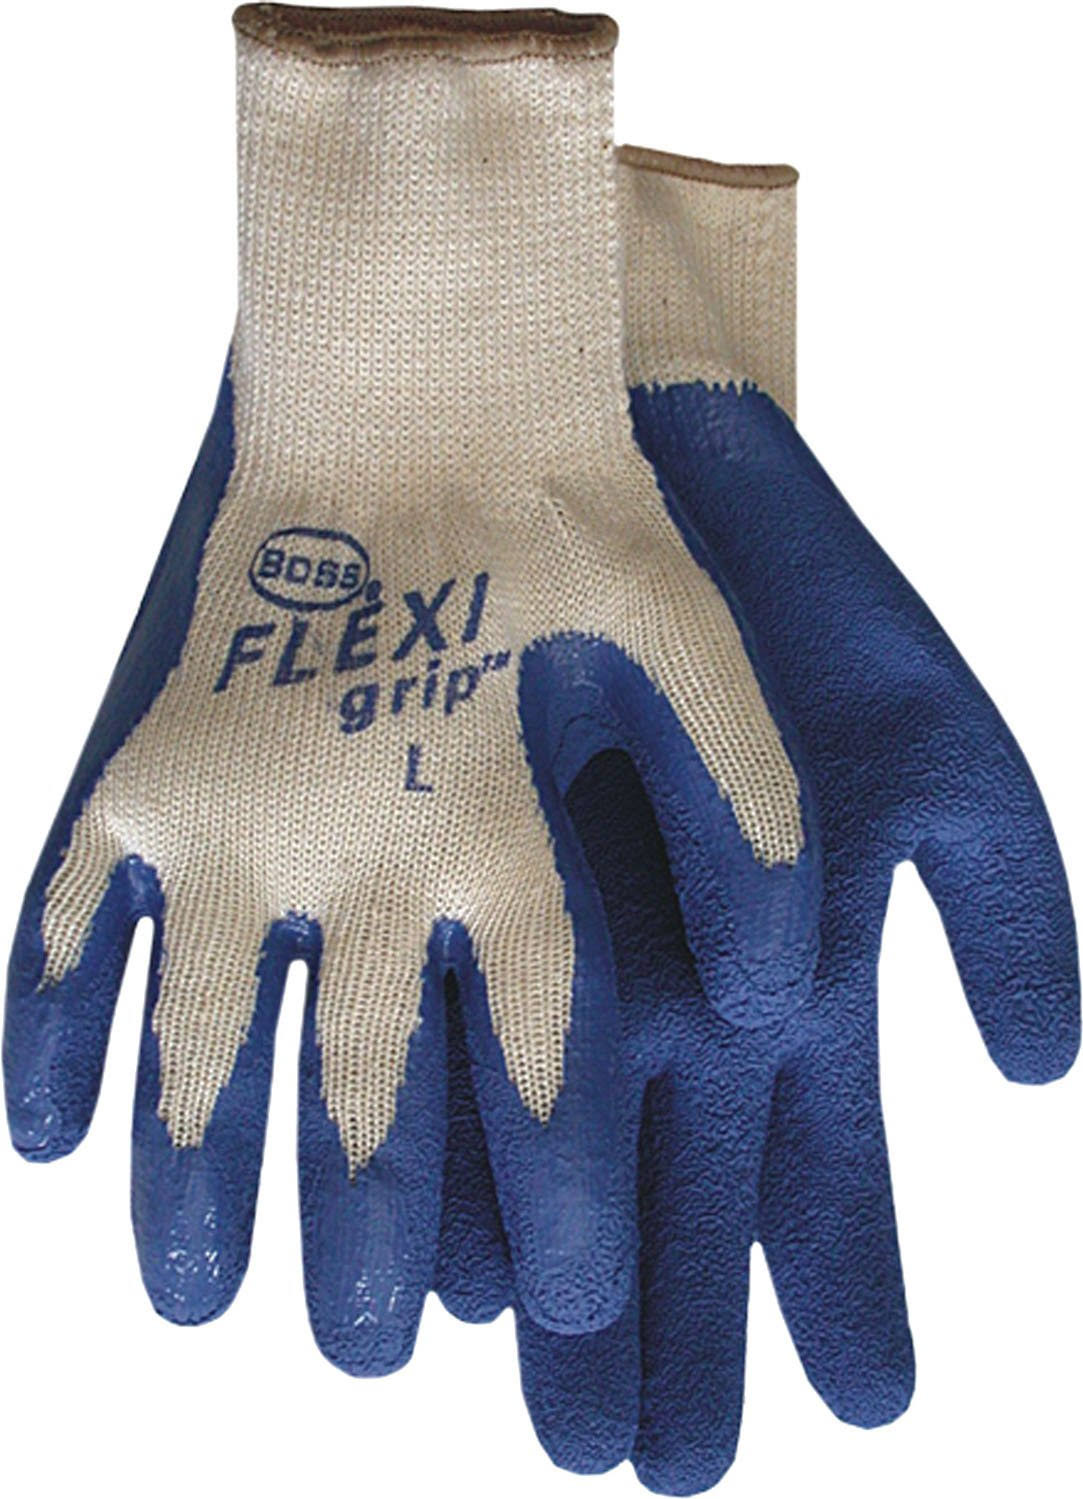 Boss Gloves Flexi Grip Gloves